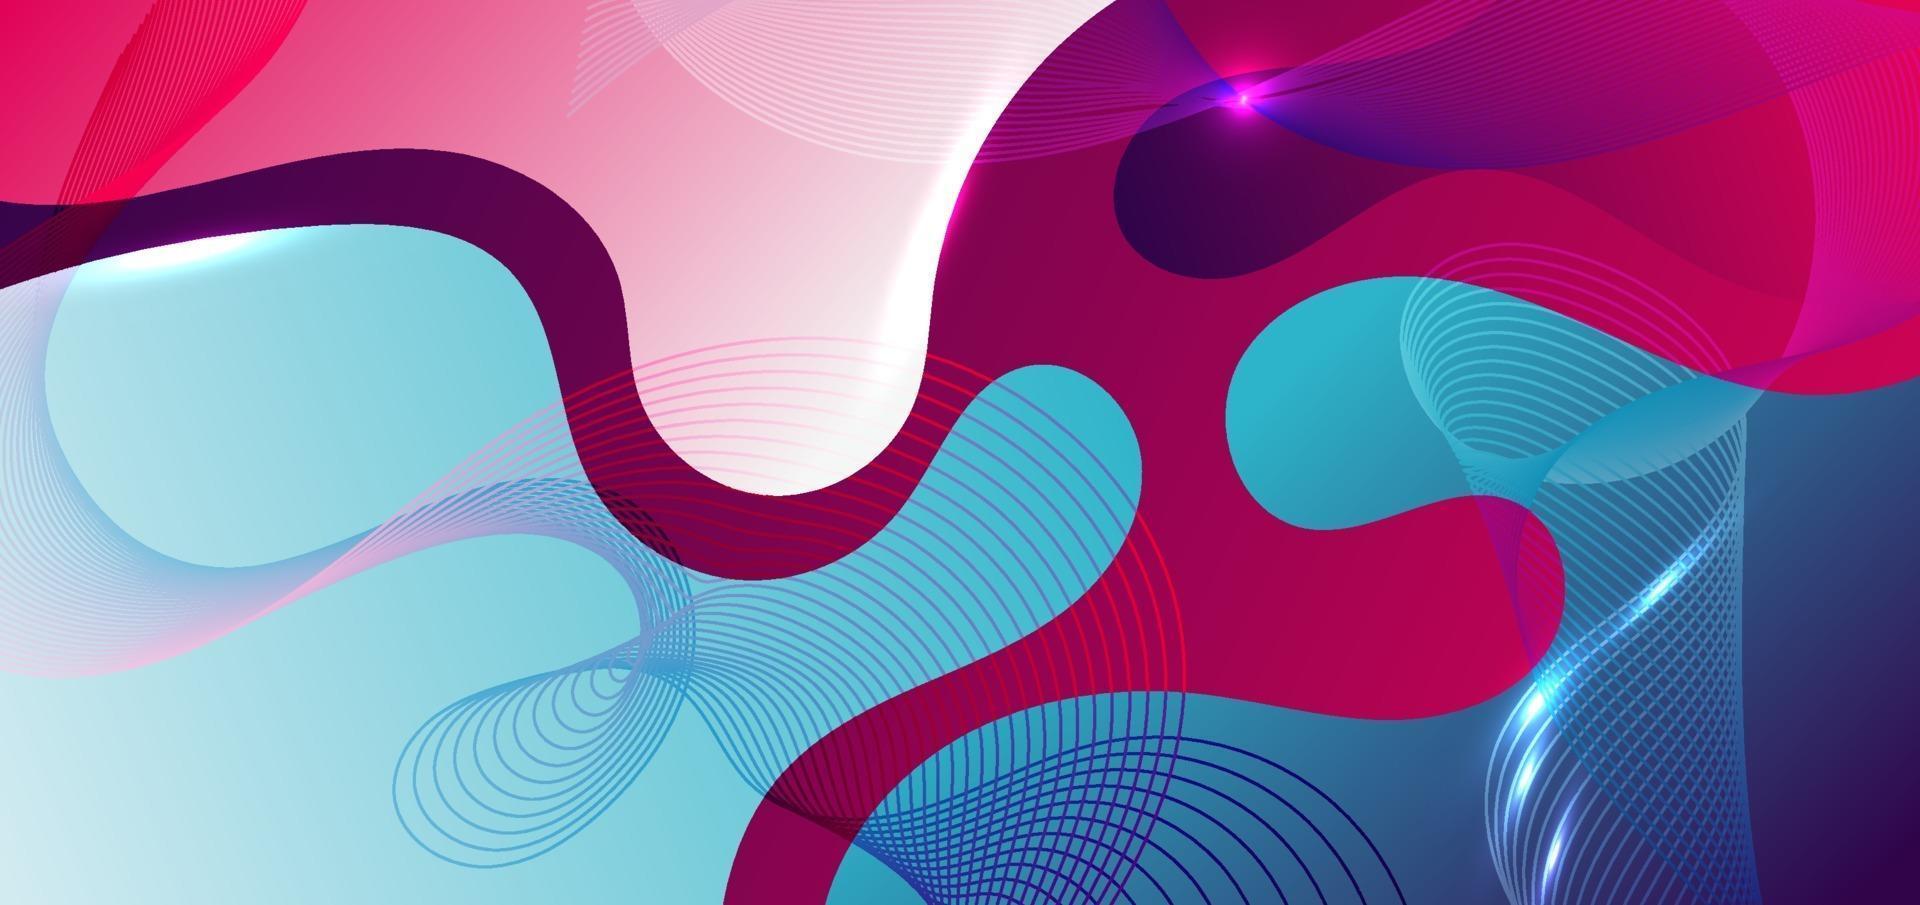 Fondo degradado azul y rosa de forma fluida abstracta con elemento de línea de onda. vector